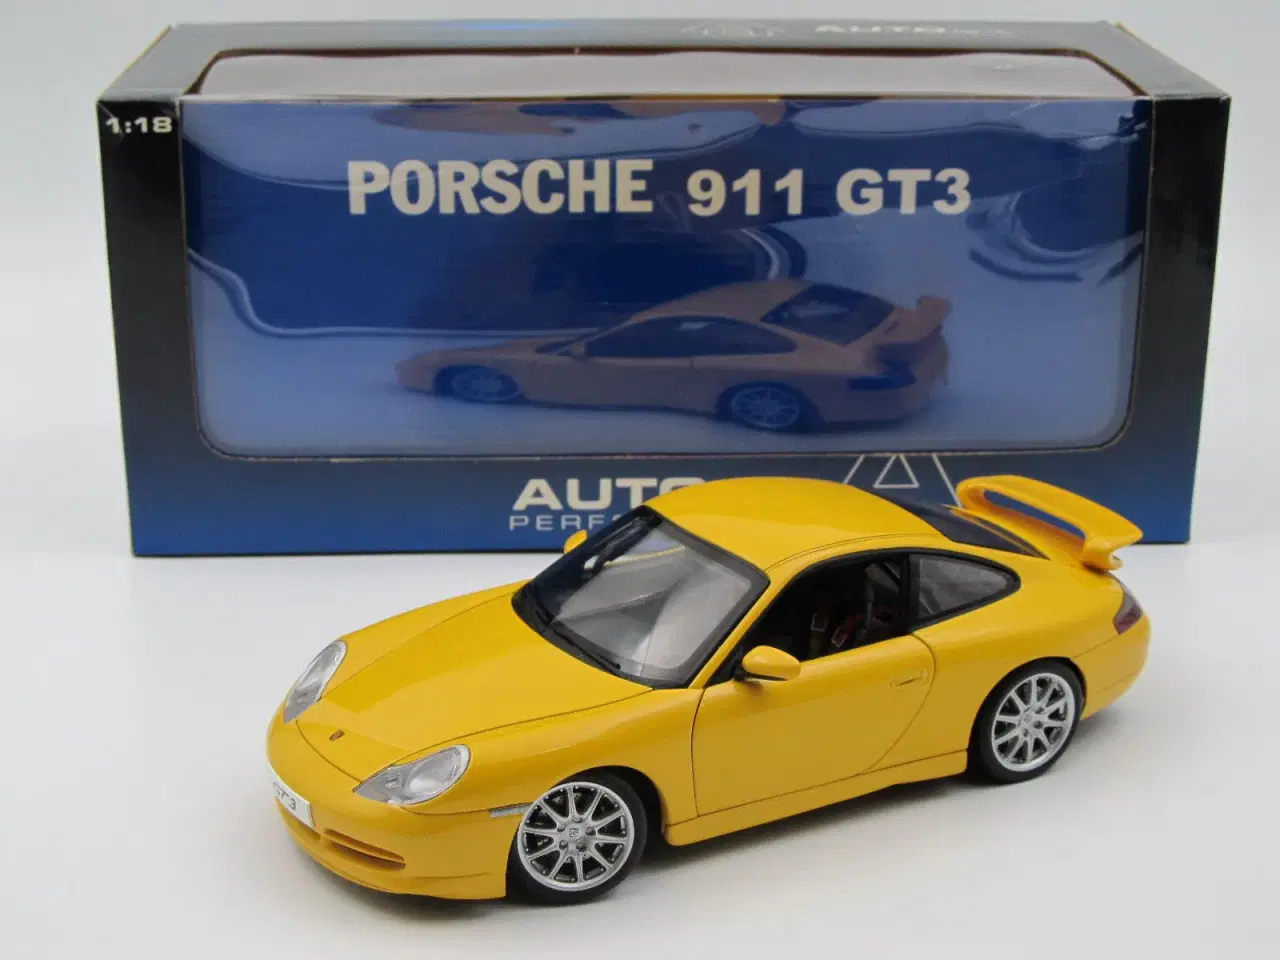 Billede 9 - 1999 Porsche 911 (996) GT3 fra AUTOart - 1:18